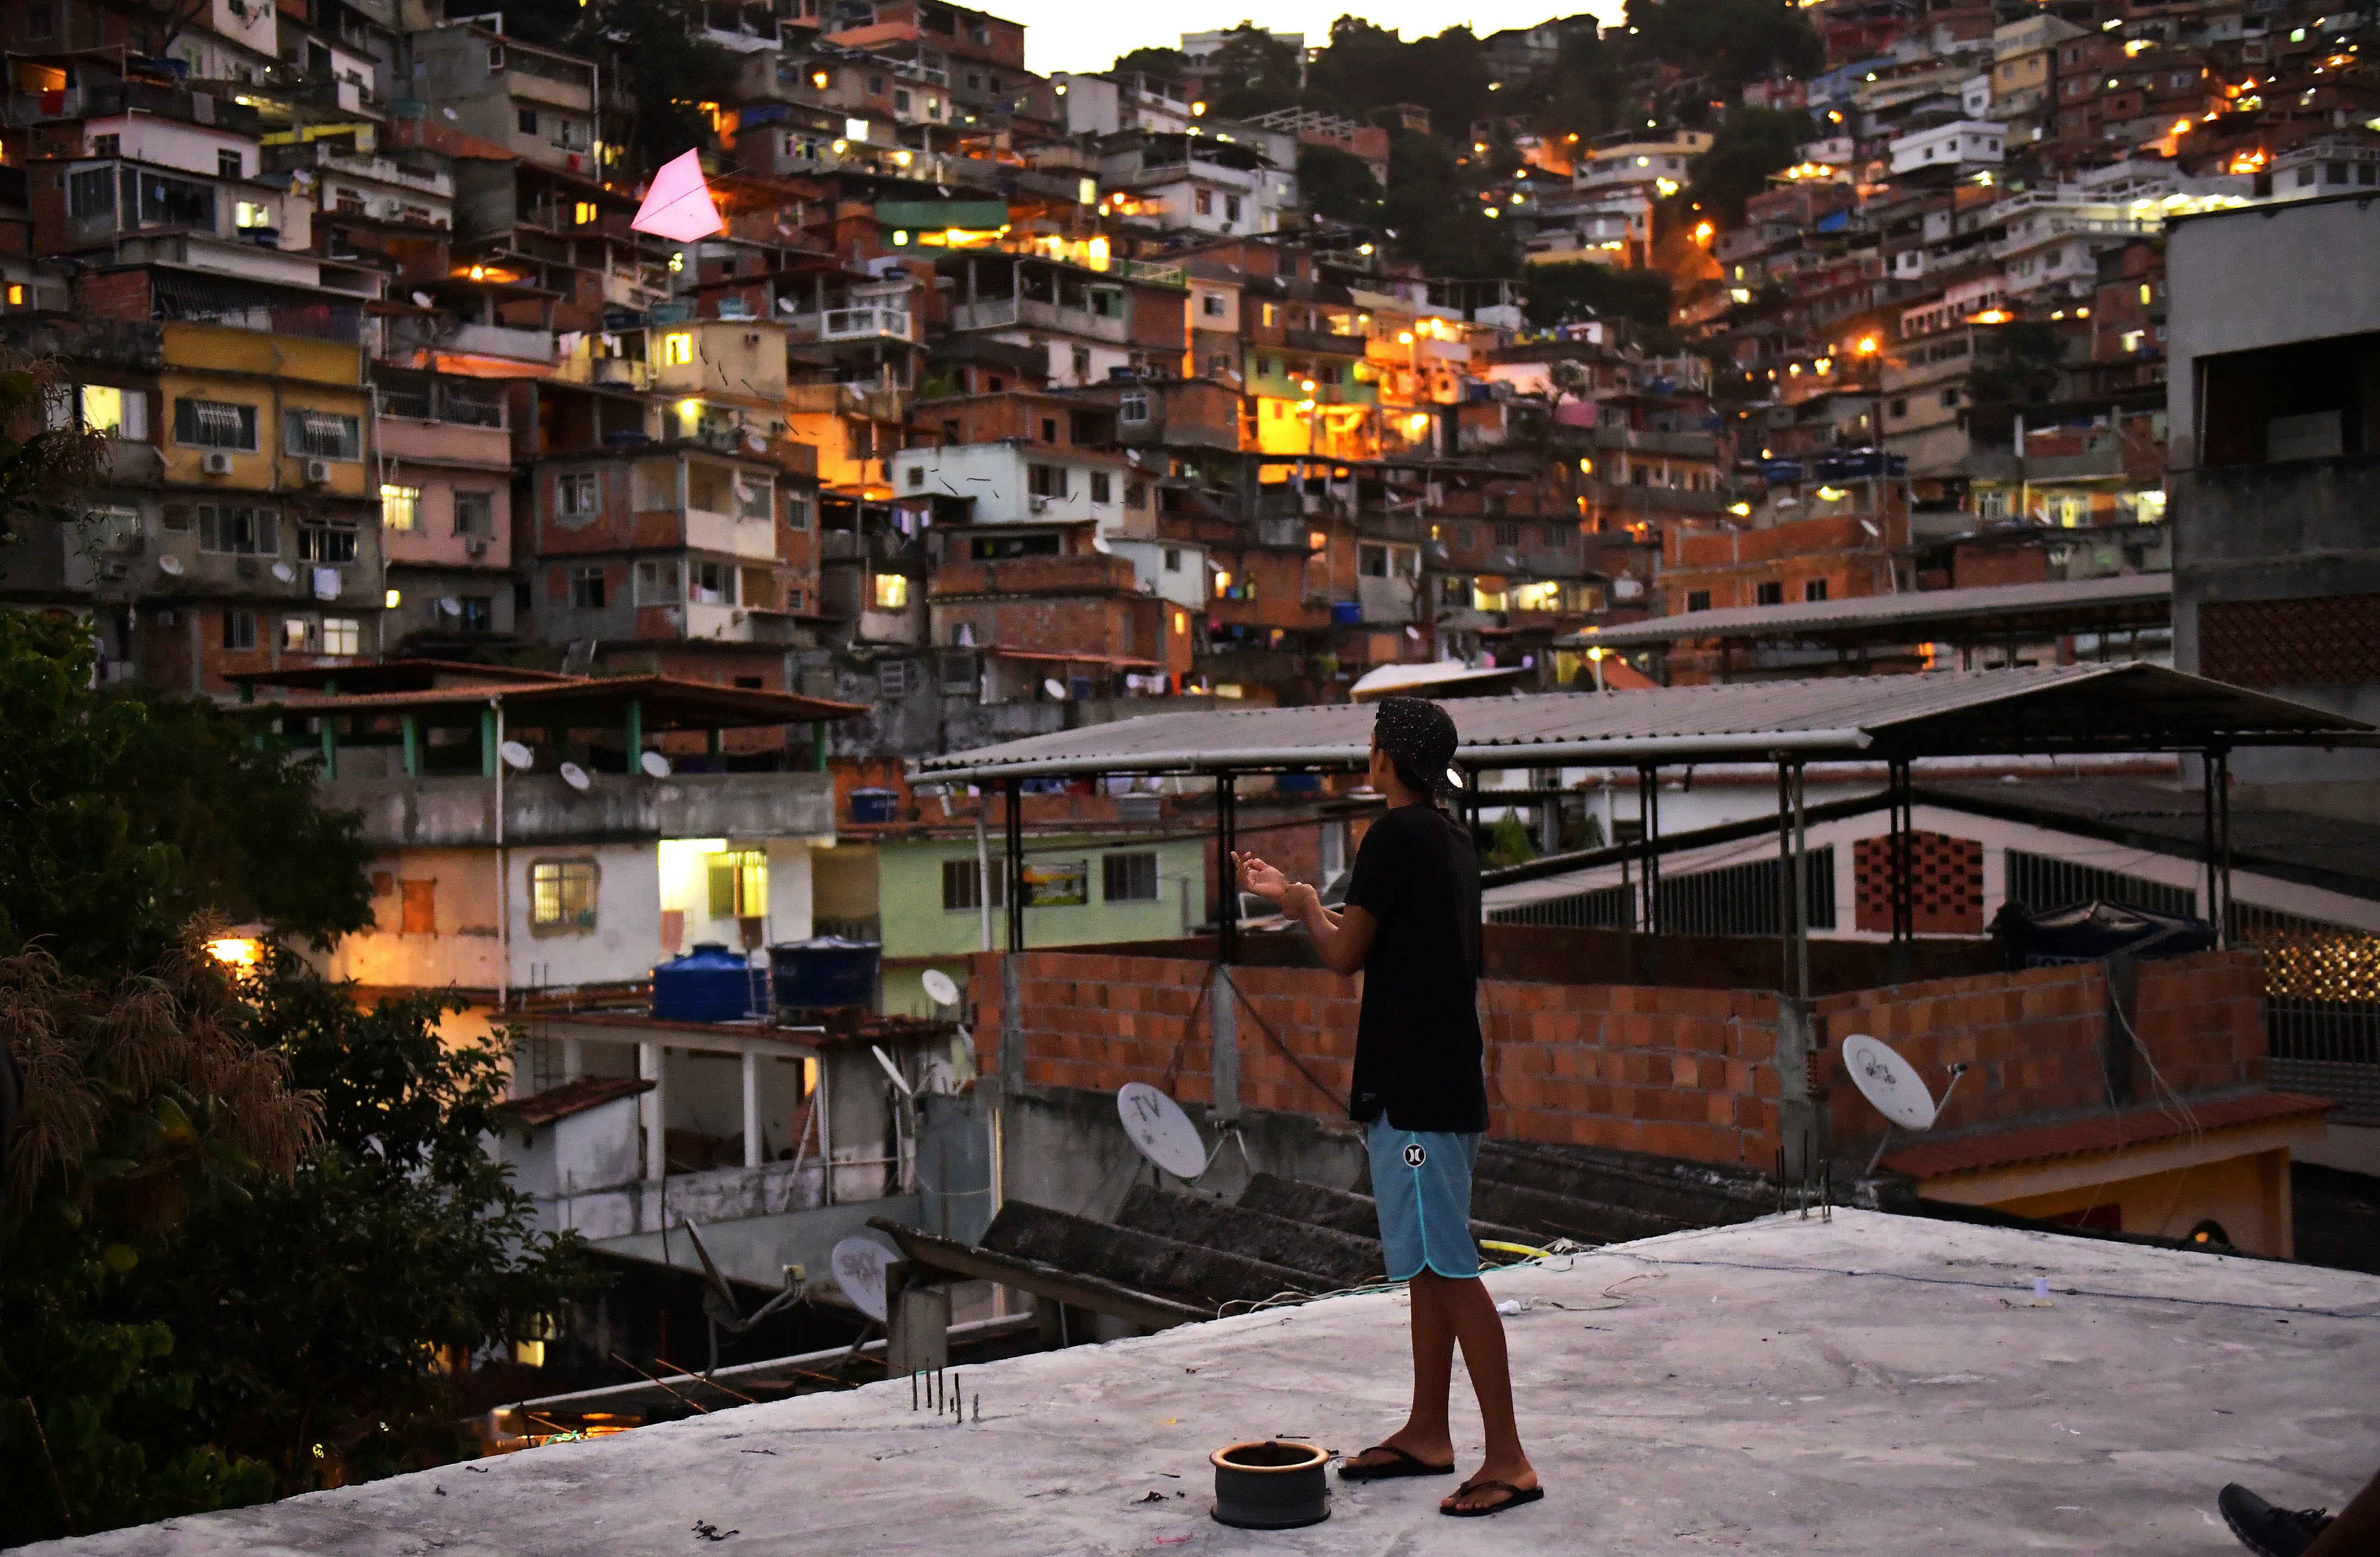 Artigo | Favela: entre as lutas populares e o apagamento da resistência